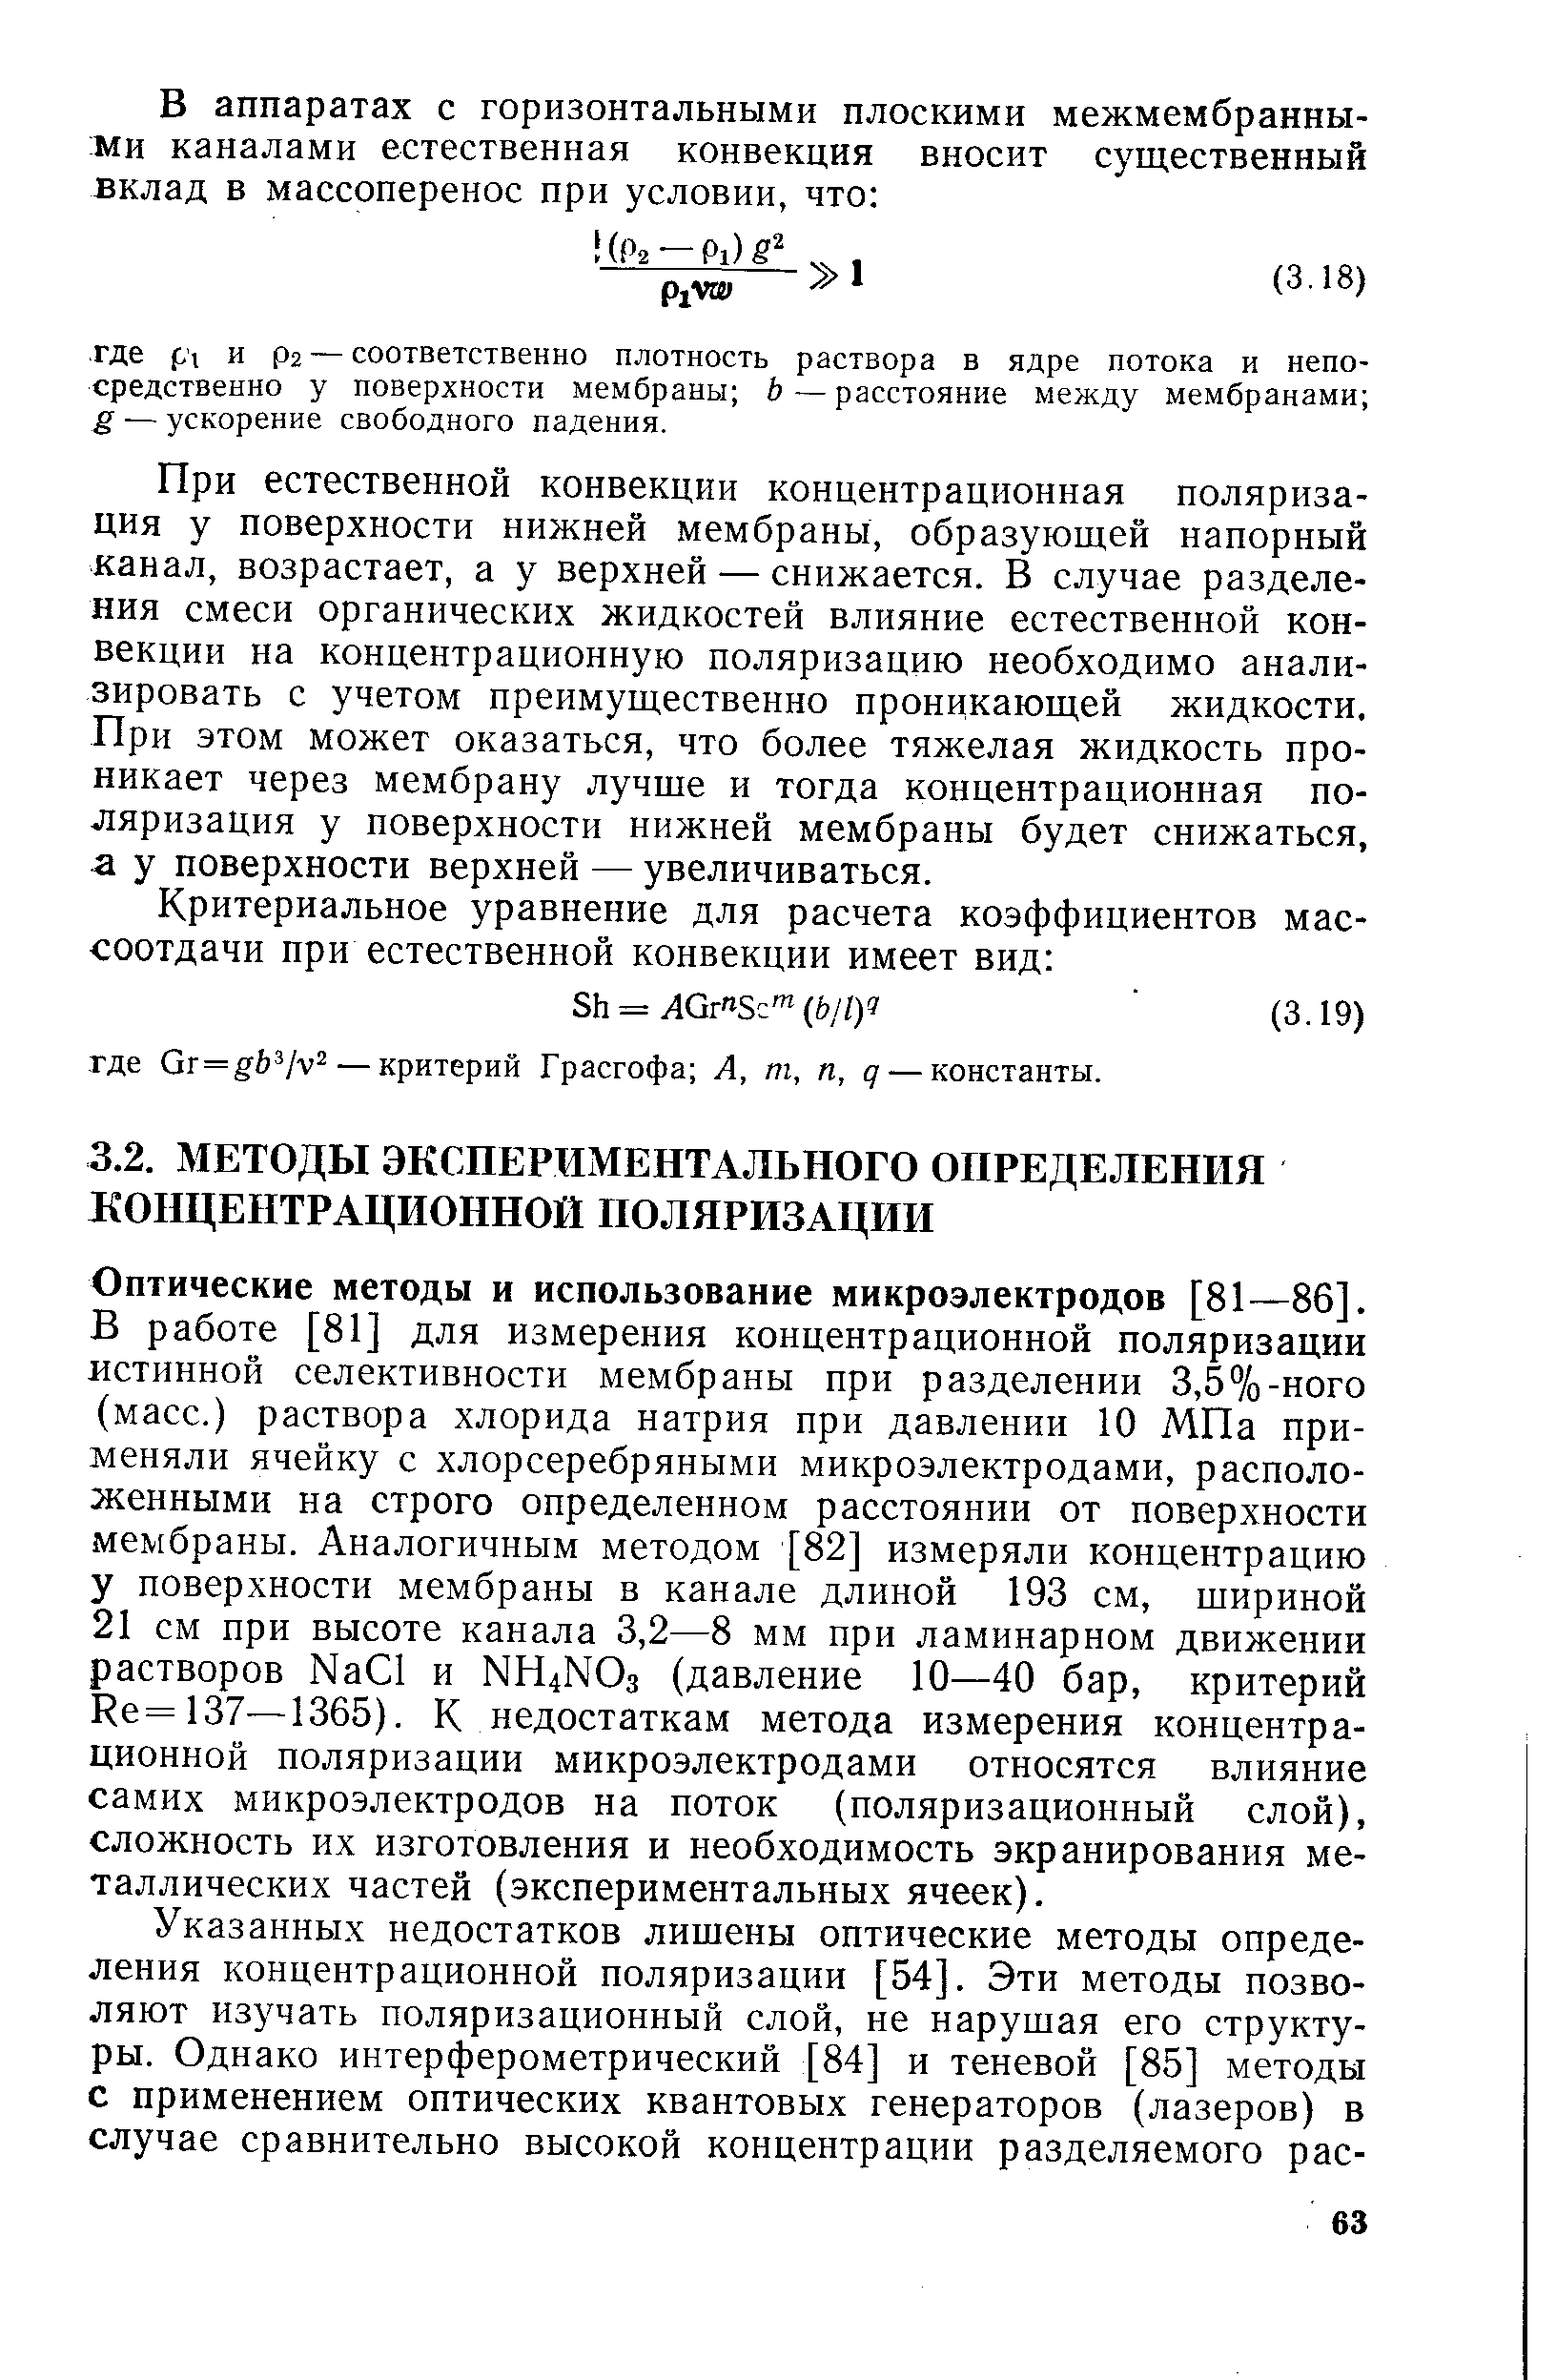 Оптические методы и использование микроэлектродов [81—86].